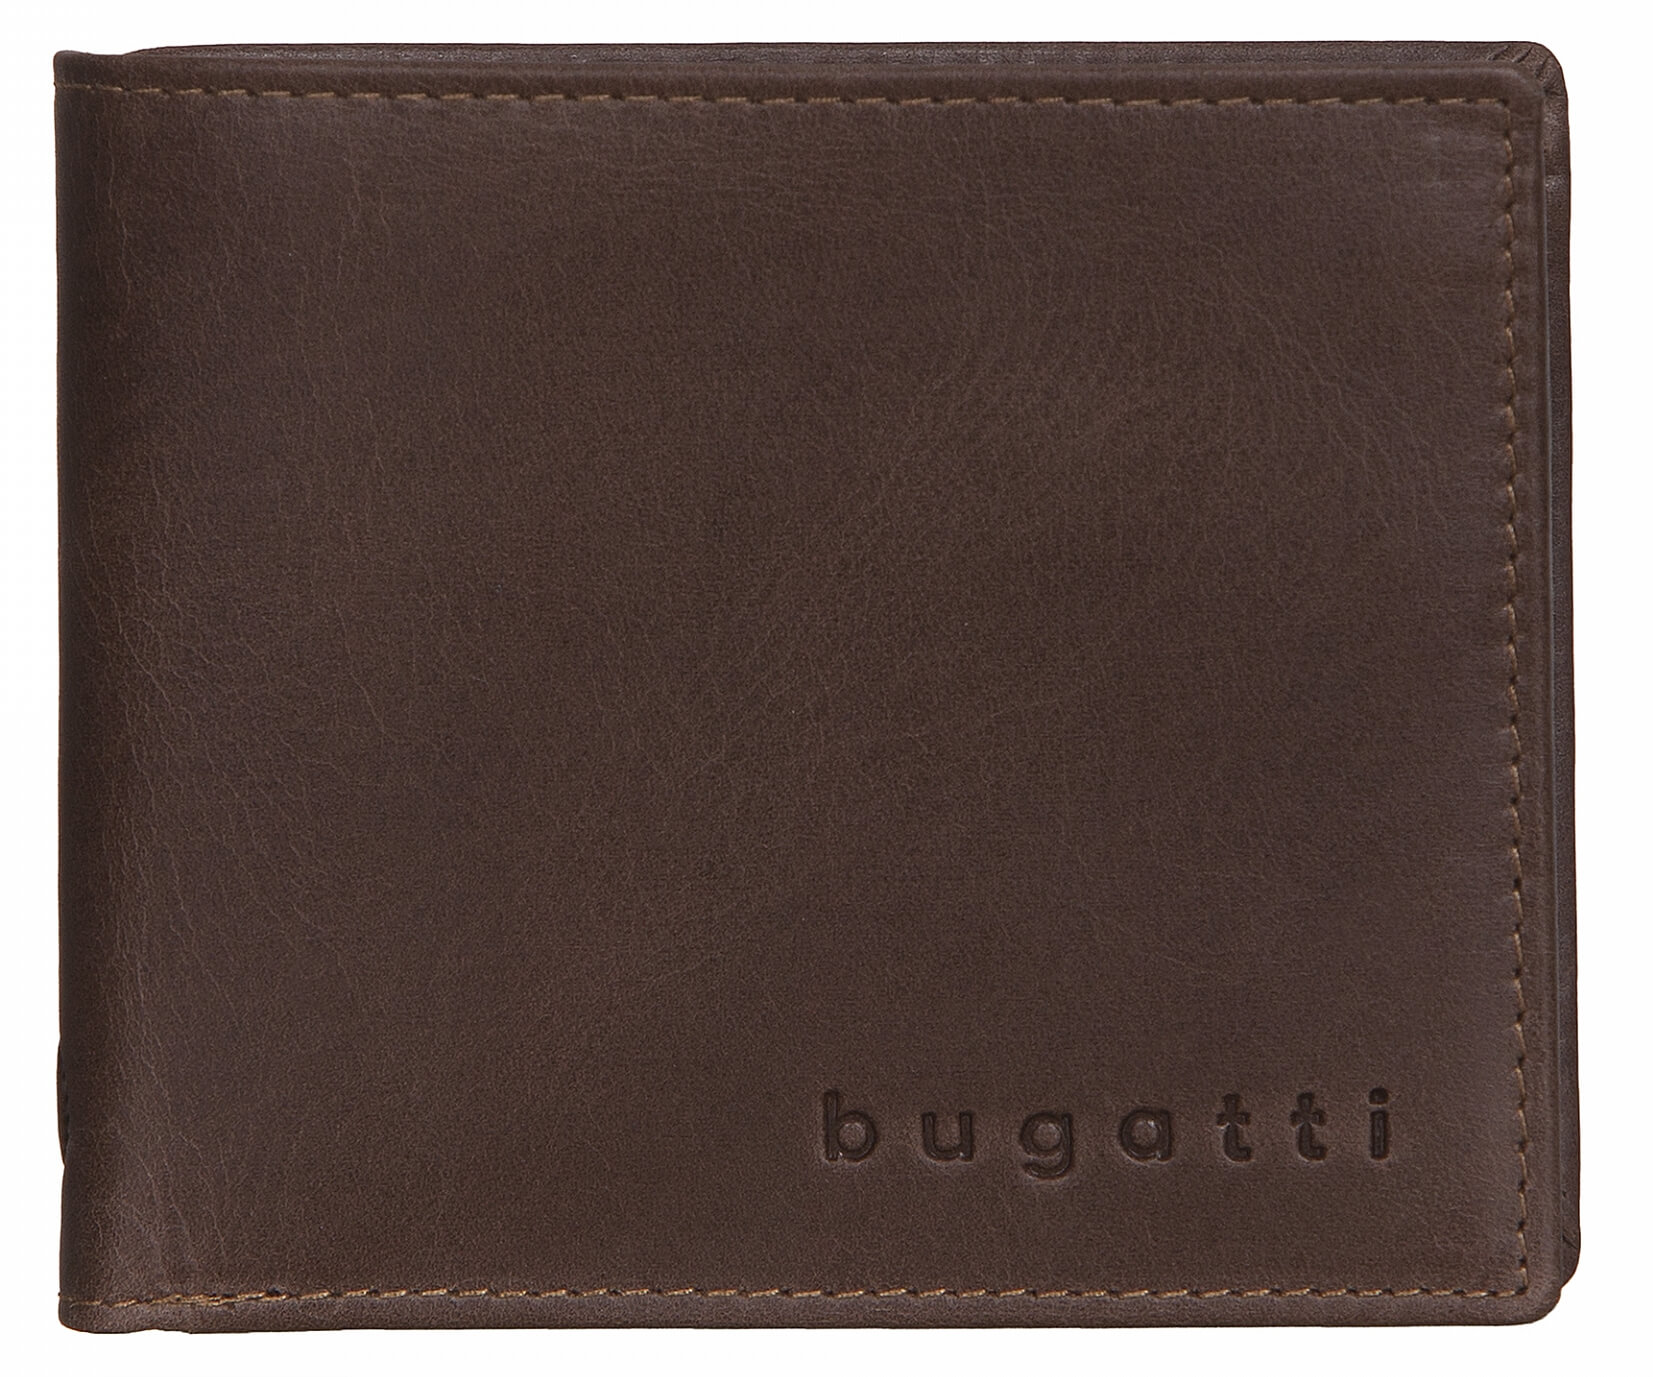 Bugatti Pánska kožená peňaženka Volo 49218202